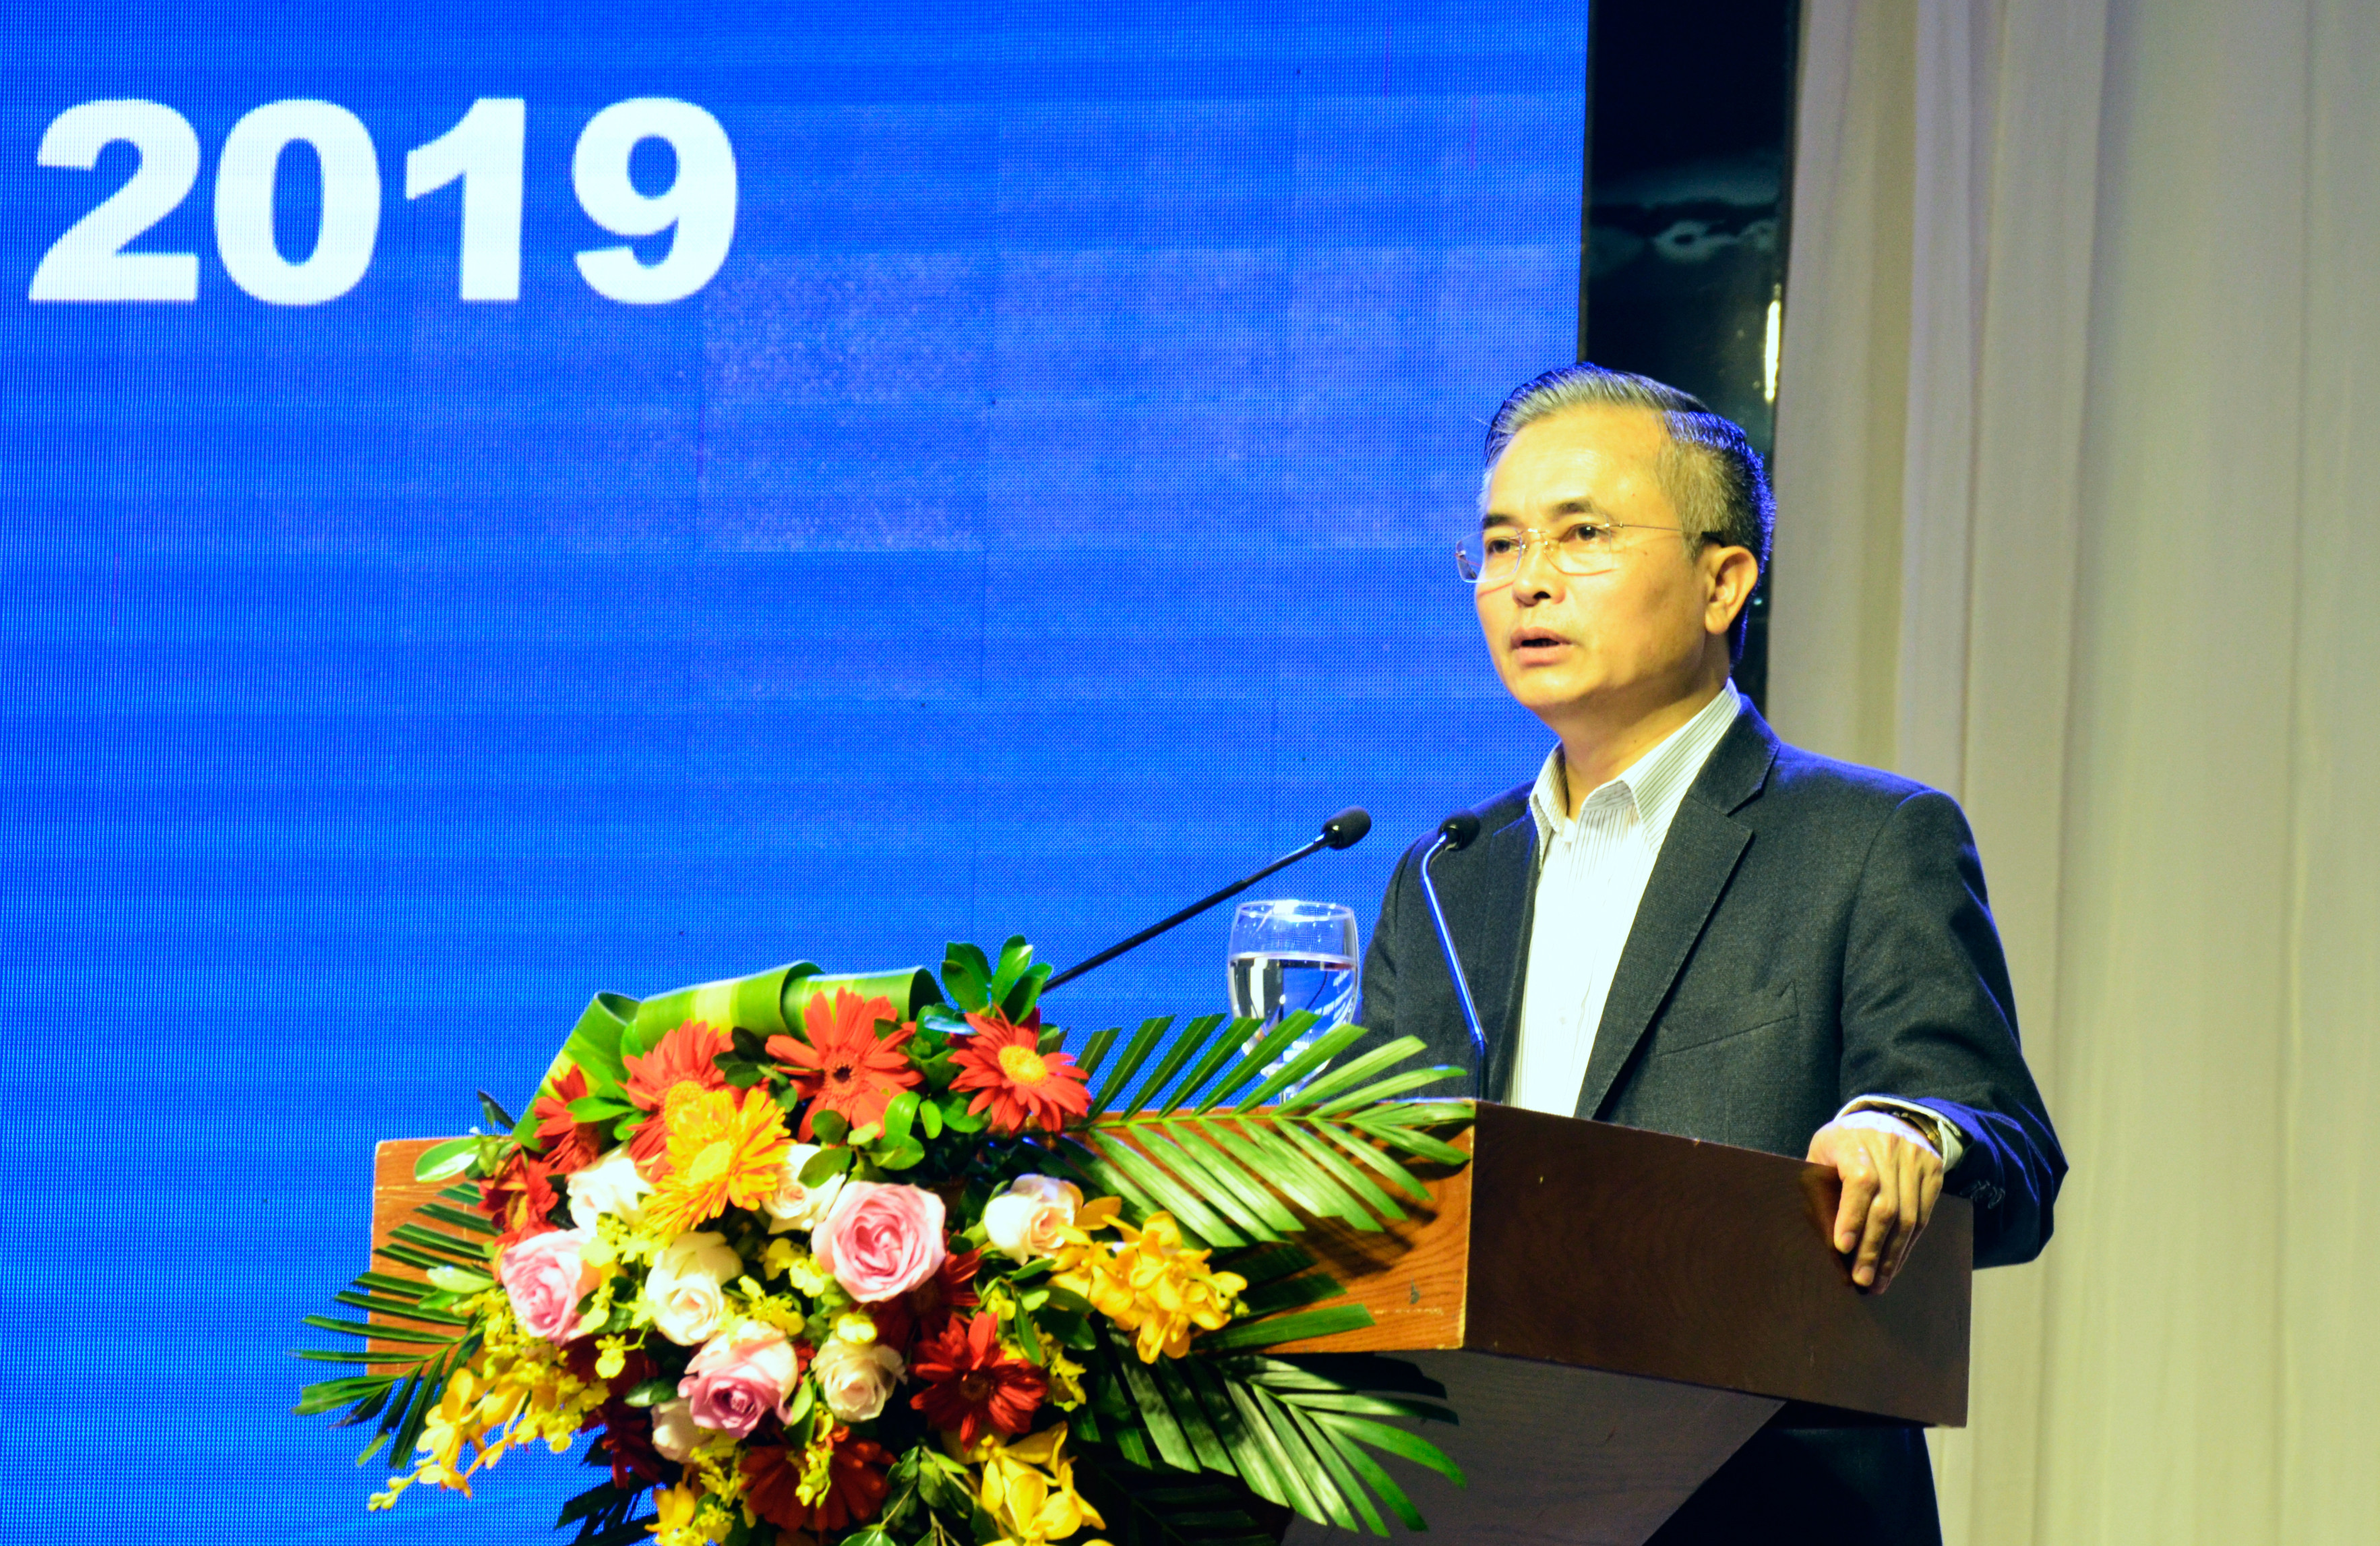 Phó Chủ tịch UBND tỉnh Lê Ngọc Hoa phát biểu tại hội nghị. Ảnh: Thanh Lê